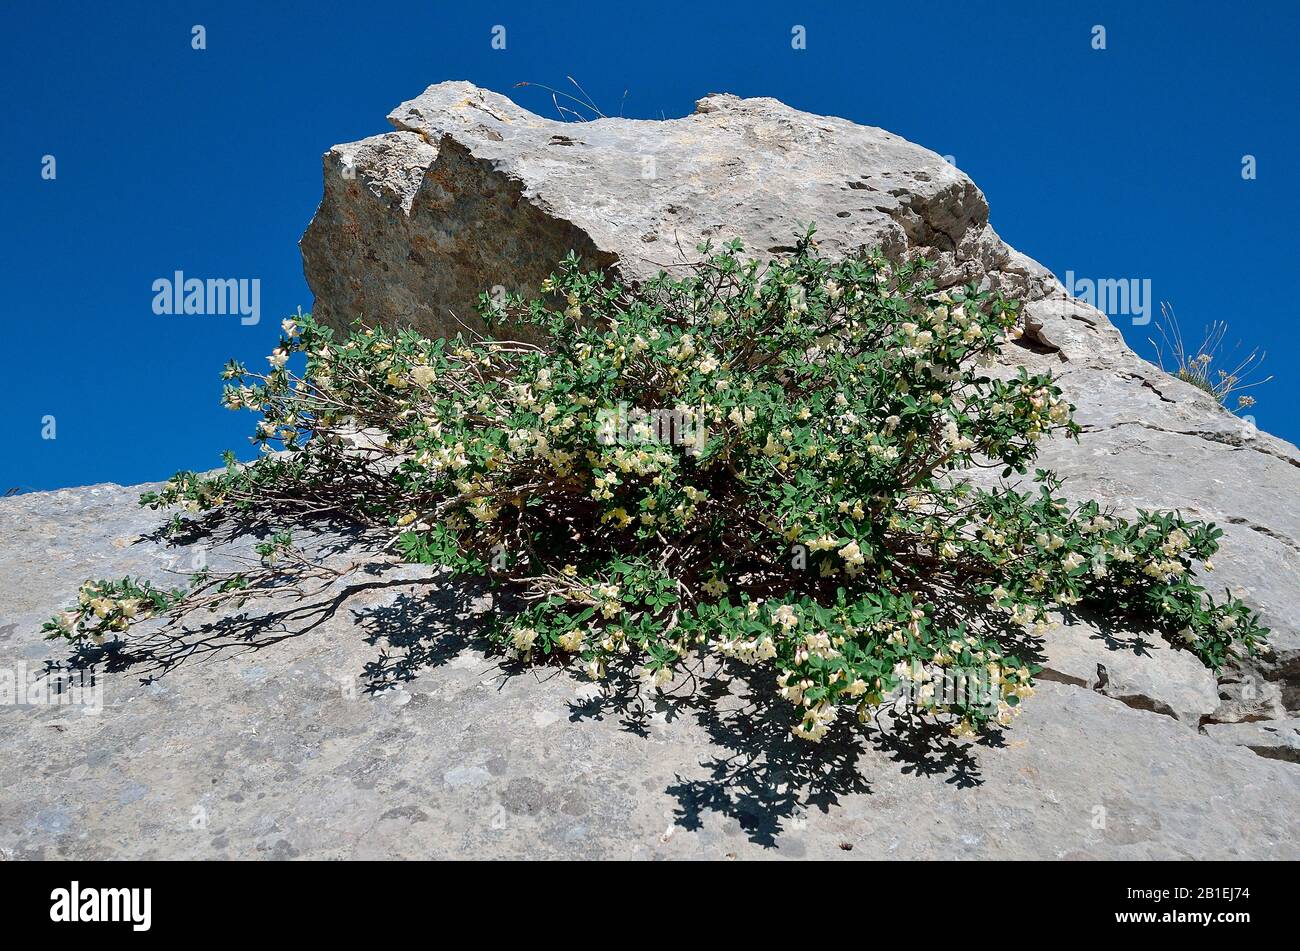 Pyrenean Honeysuckle (Lonicera pyrenaica) in bloom in subalpine limestone rocks, Aragonese Pyrenees, Spain Stock Photo